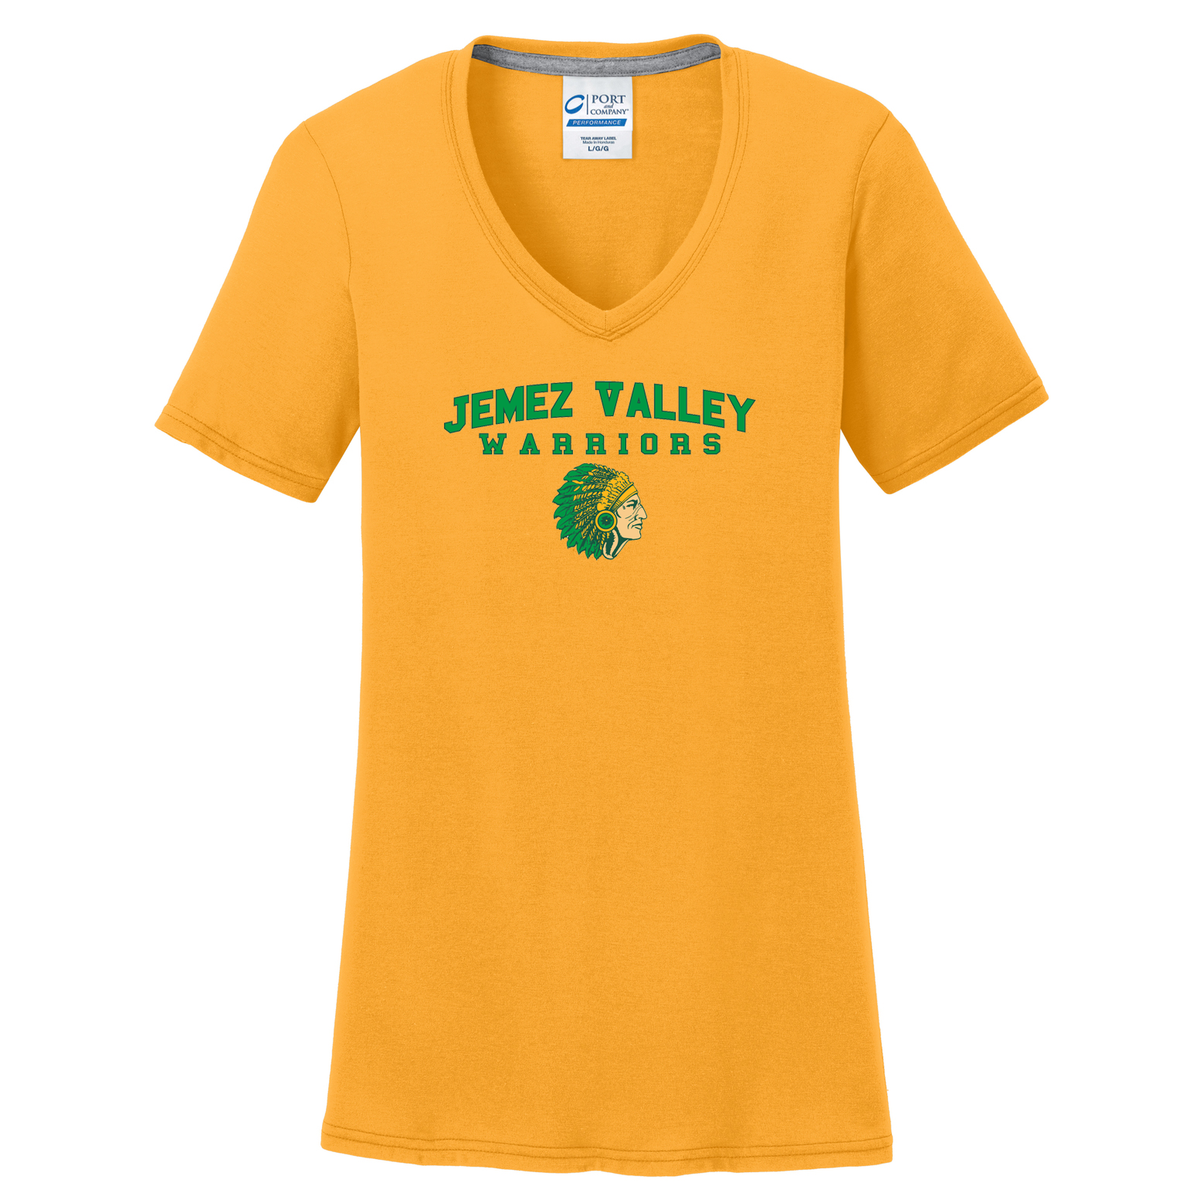 Jemez Valley Warriors Women's T-Shirt